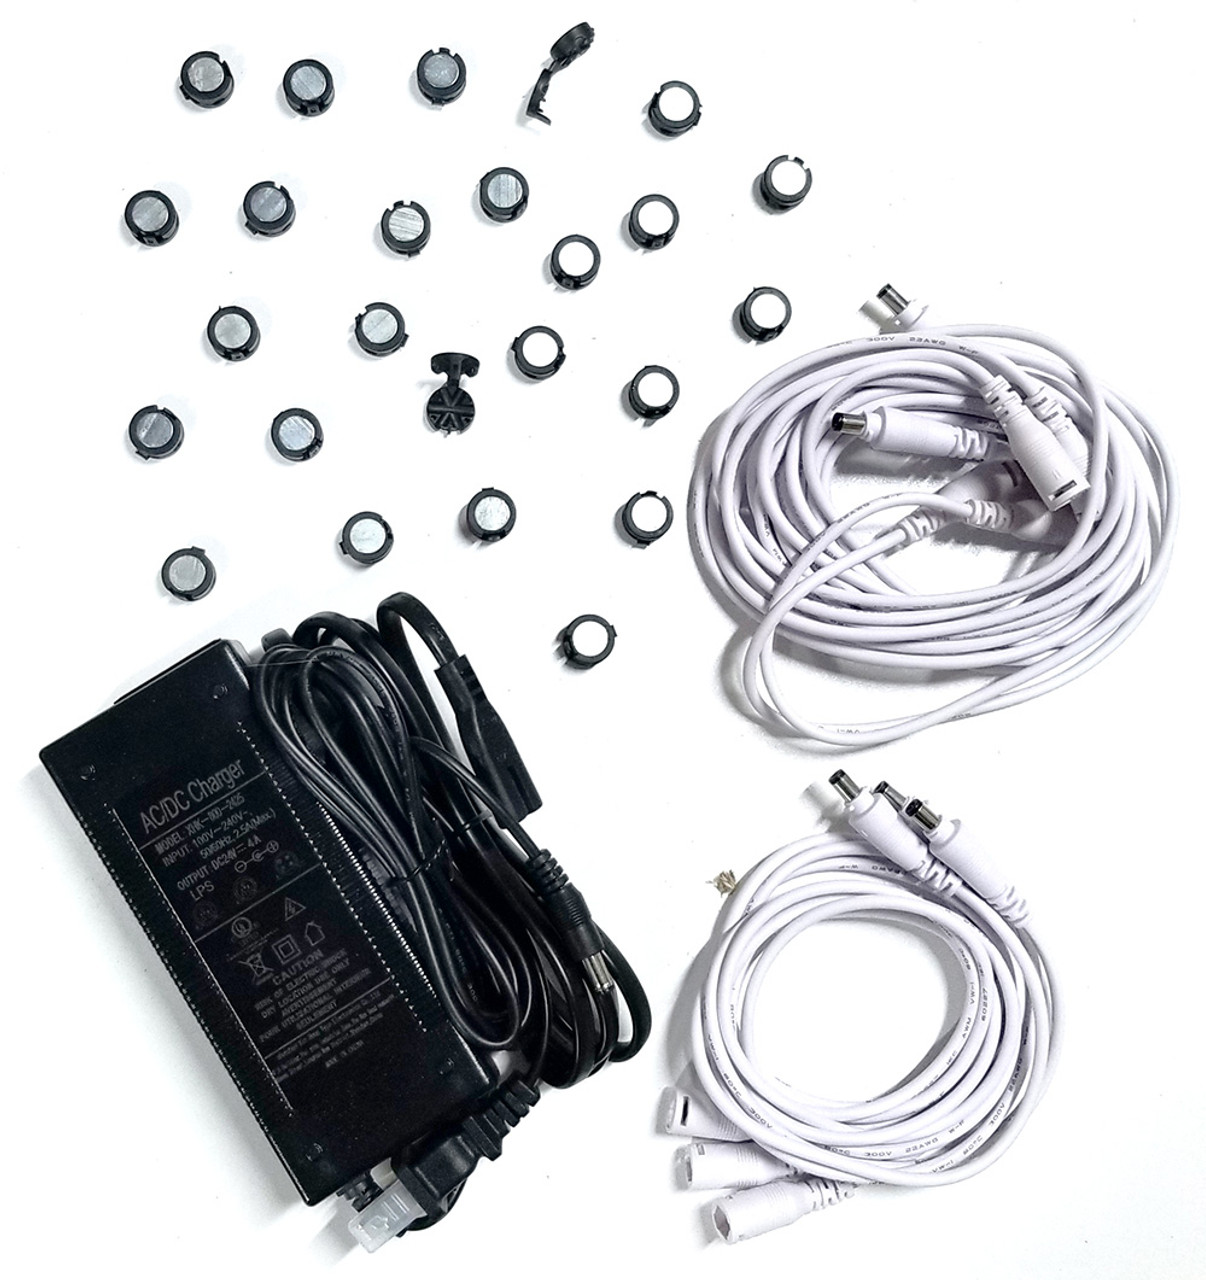 LED Magnetic Shelf Light Kit – 6-Pack – 16W